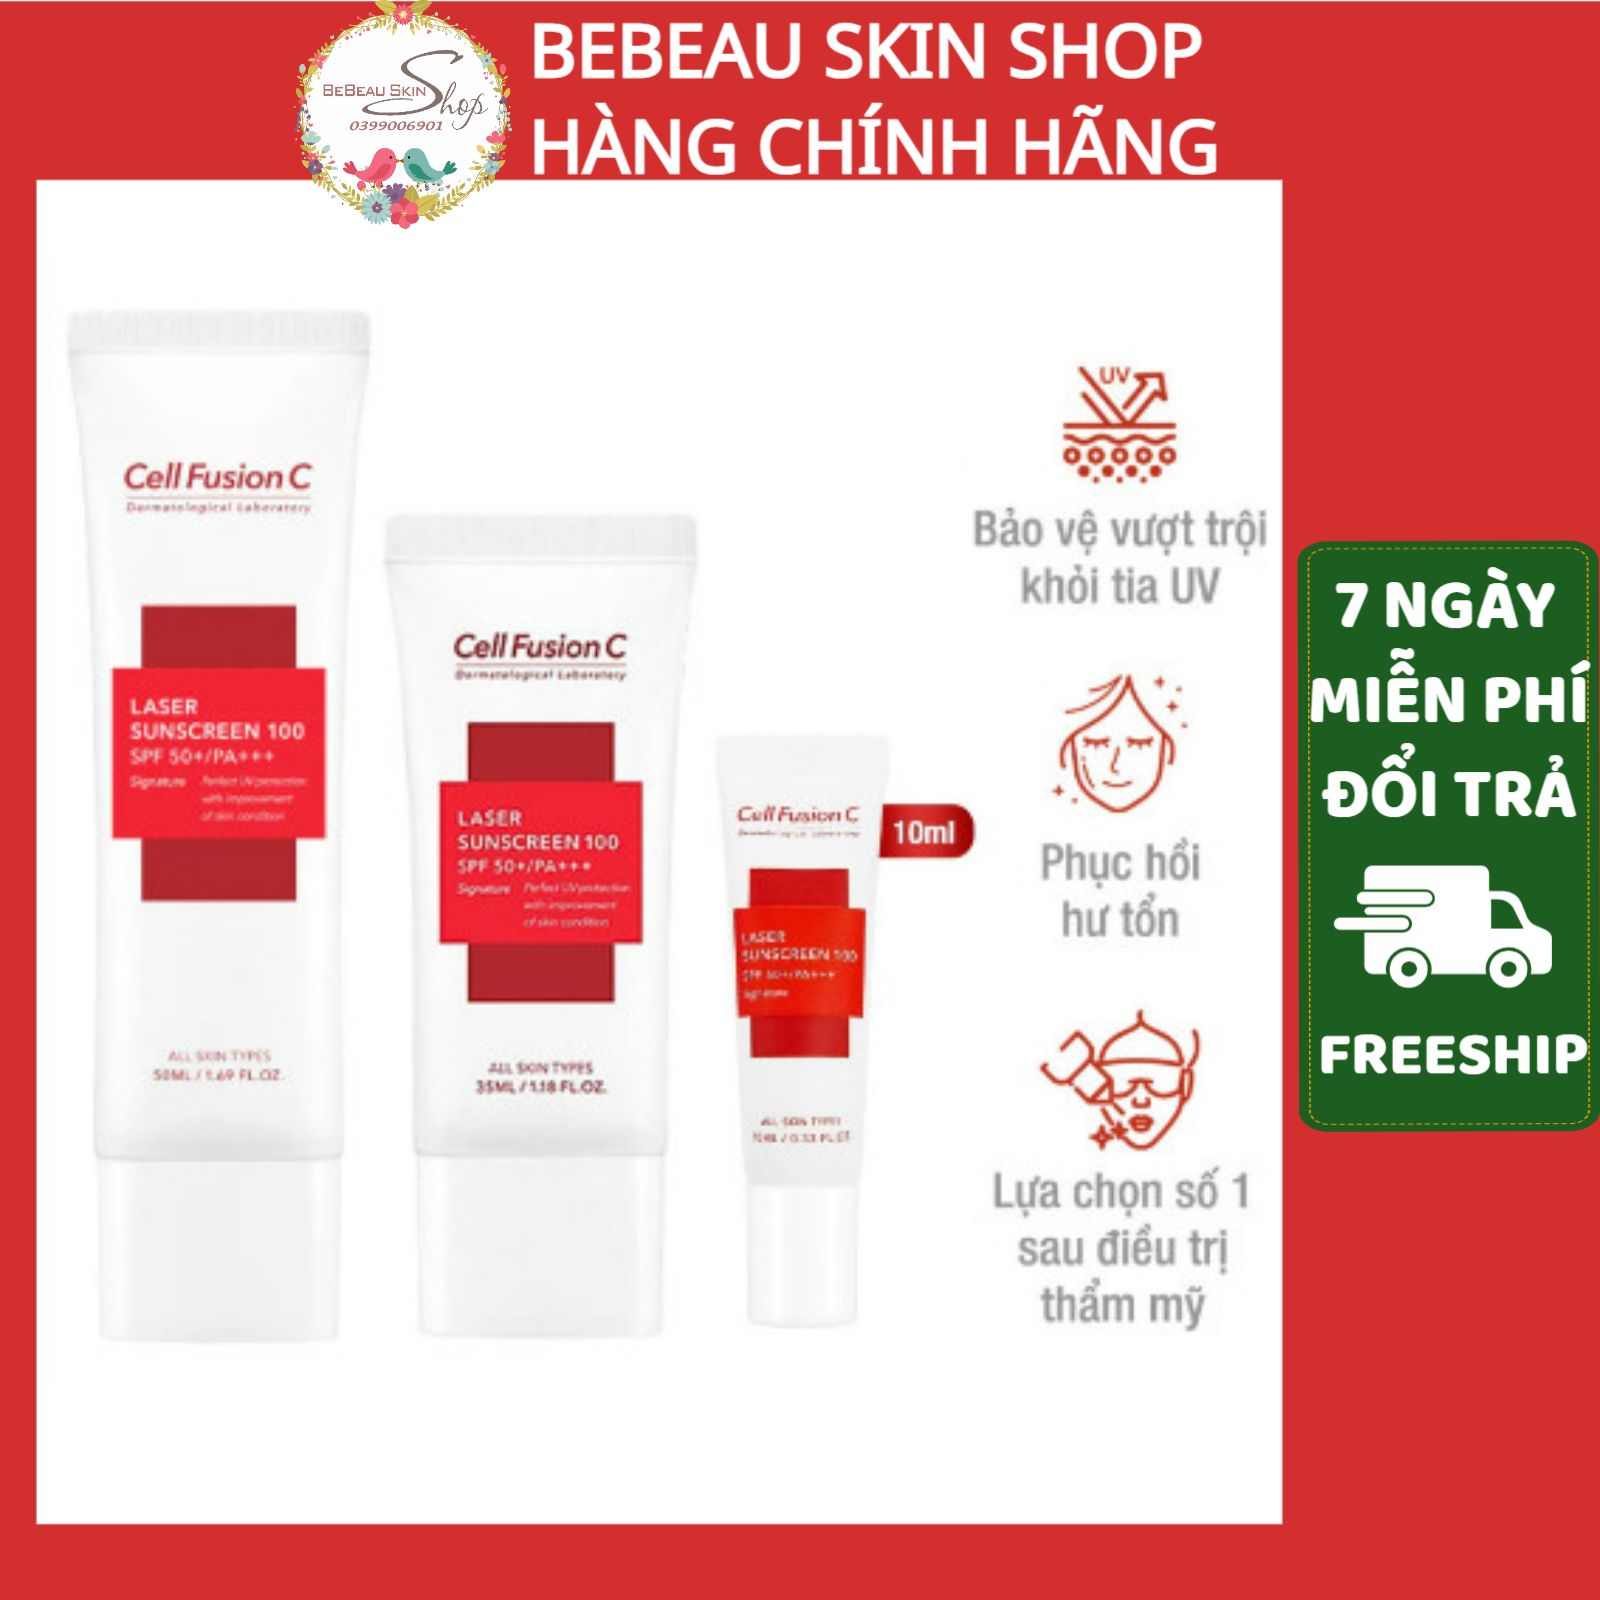 Cell Fusion C - Kem chống nắng Cell Fusion C Laser Suncreen 100 Bebeau Skin Shop